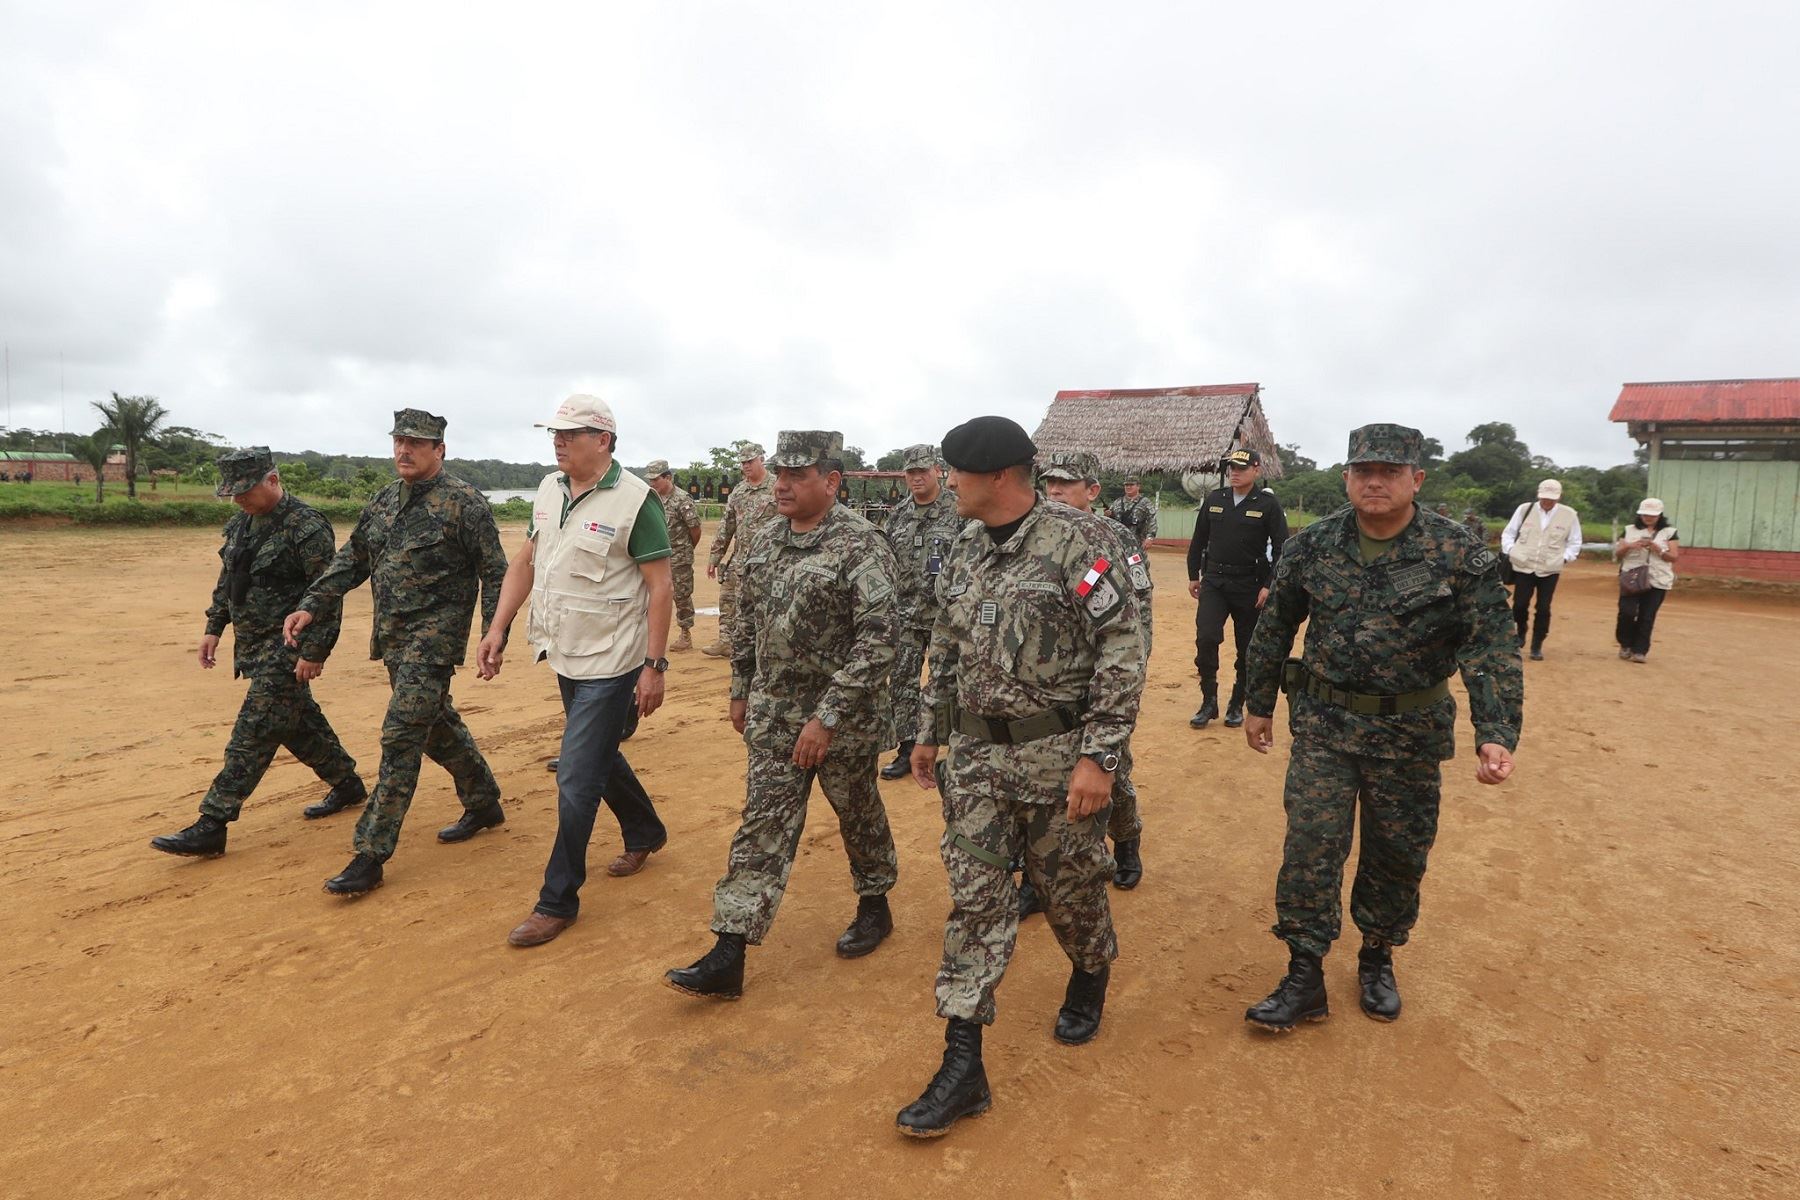 El ministro de Defensa, José Huerta Torres, visitó las instalaciones militares ubicadas en la localidad de El Estrecho, en la frontera con Colombia.